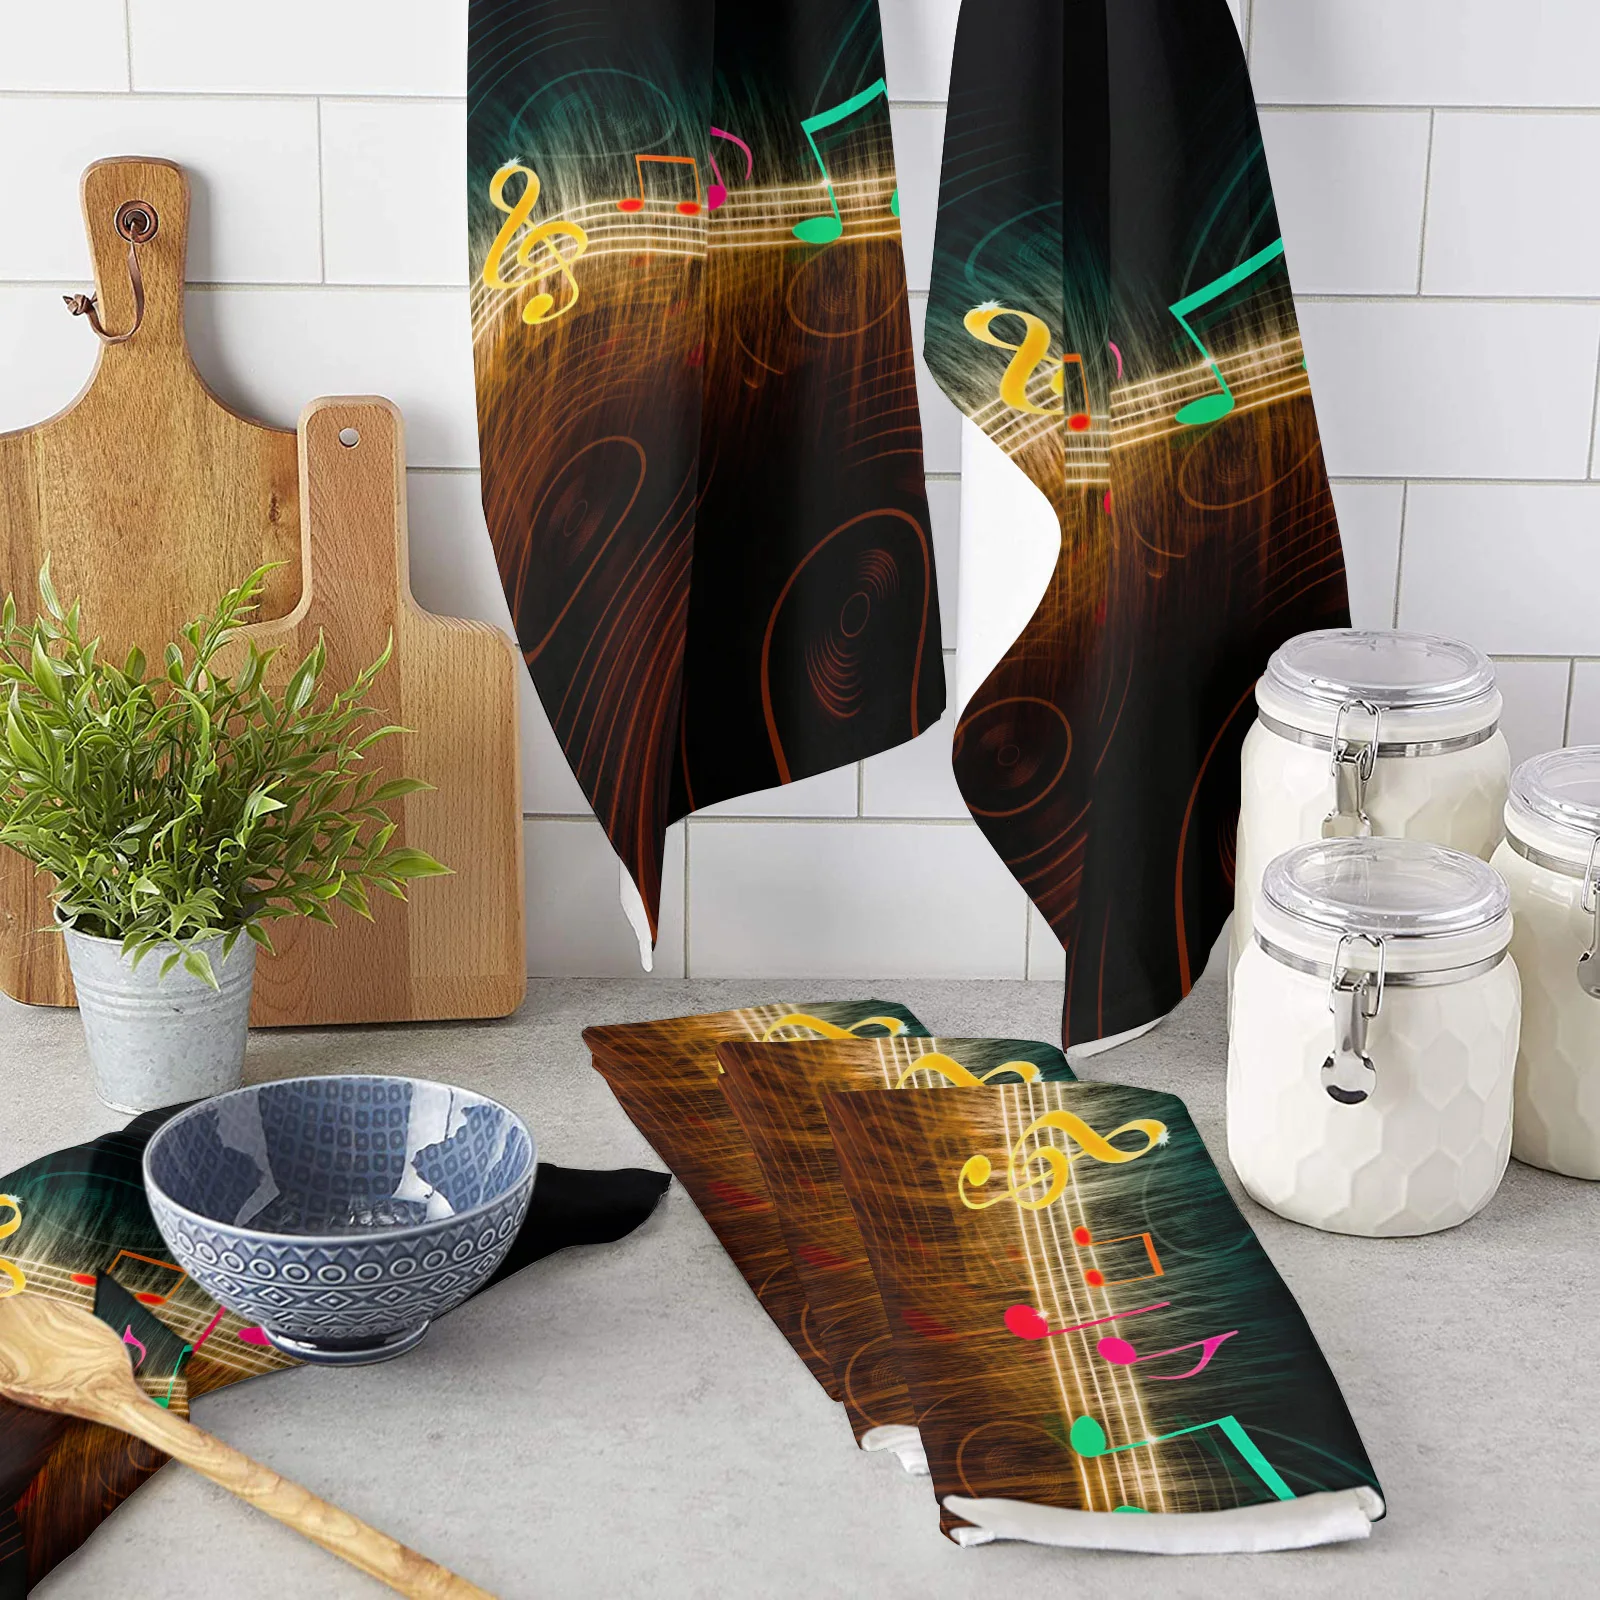 

Музыкальный символ Джаз ритм микрофибра кухонное полотенце для рук блюдо ткань столовая посуда искусственное полотенце посуда для кухни